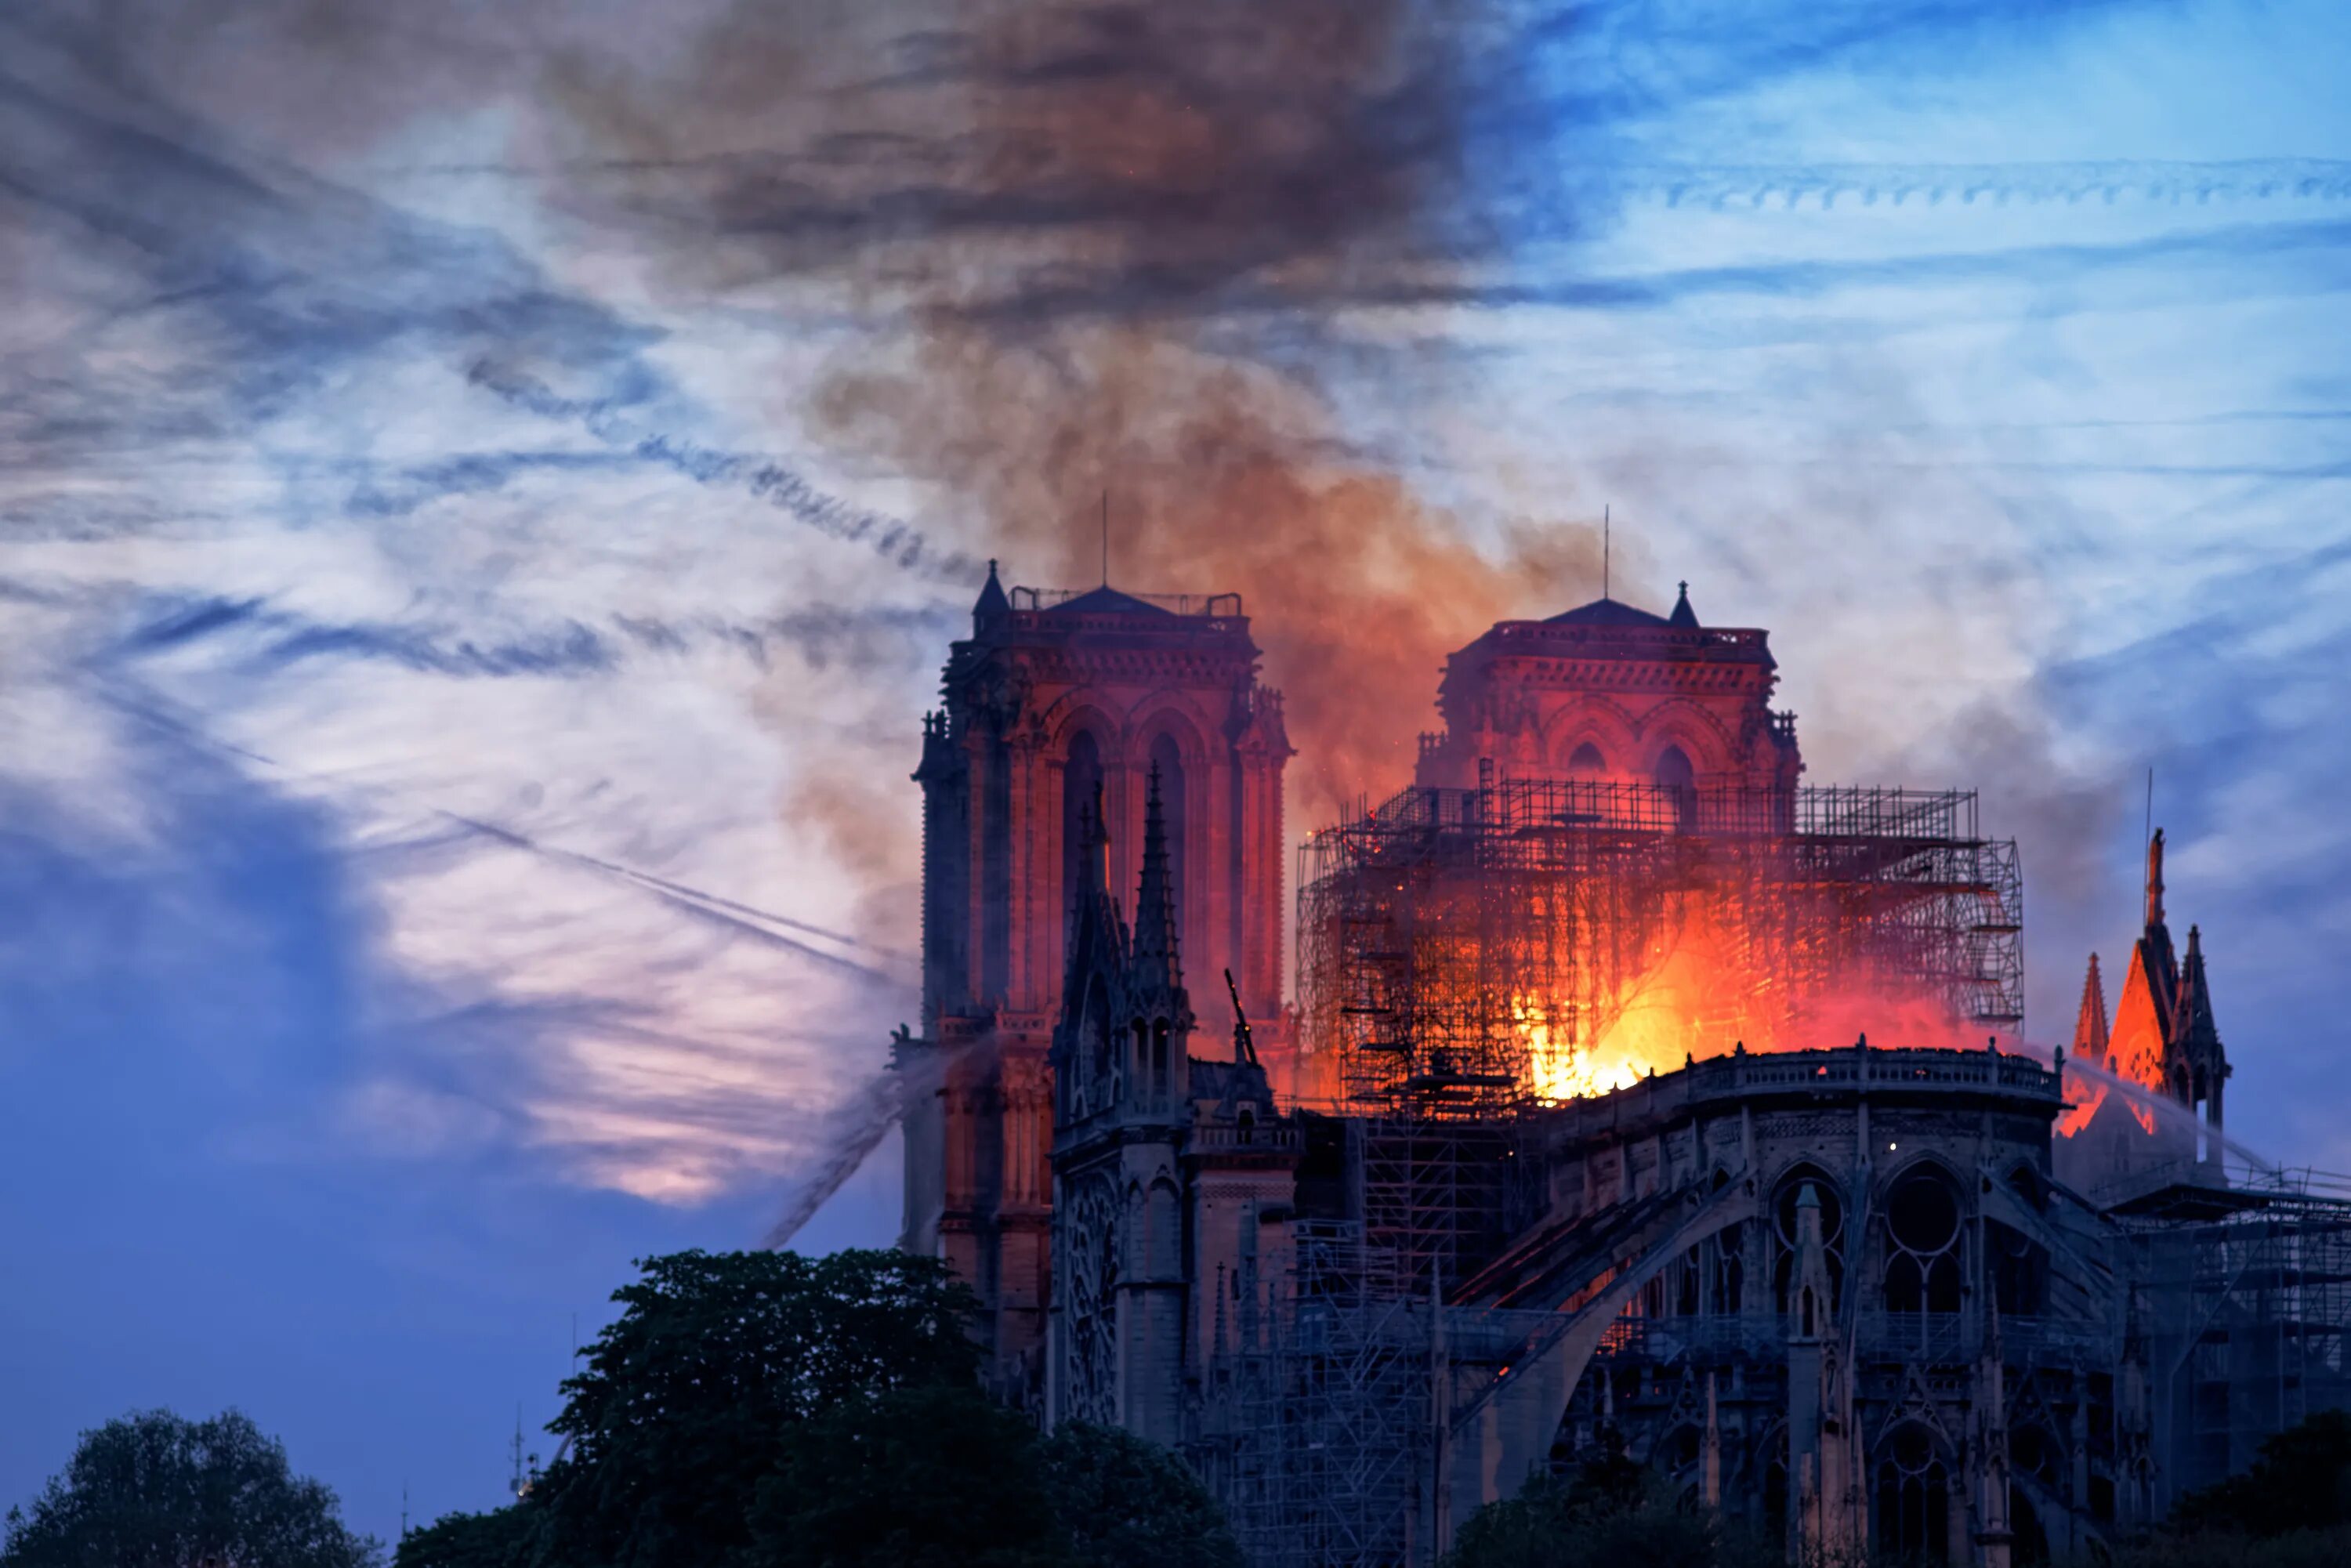 Город после пожара. Храм Парижской Богоматери пожар. Нотр дам де пари сгорел.